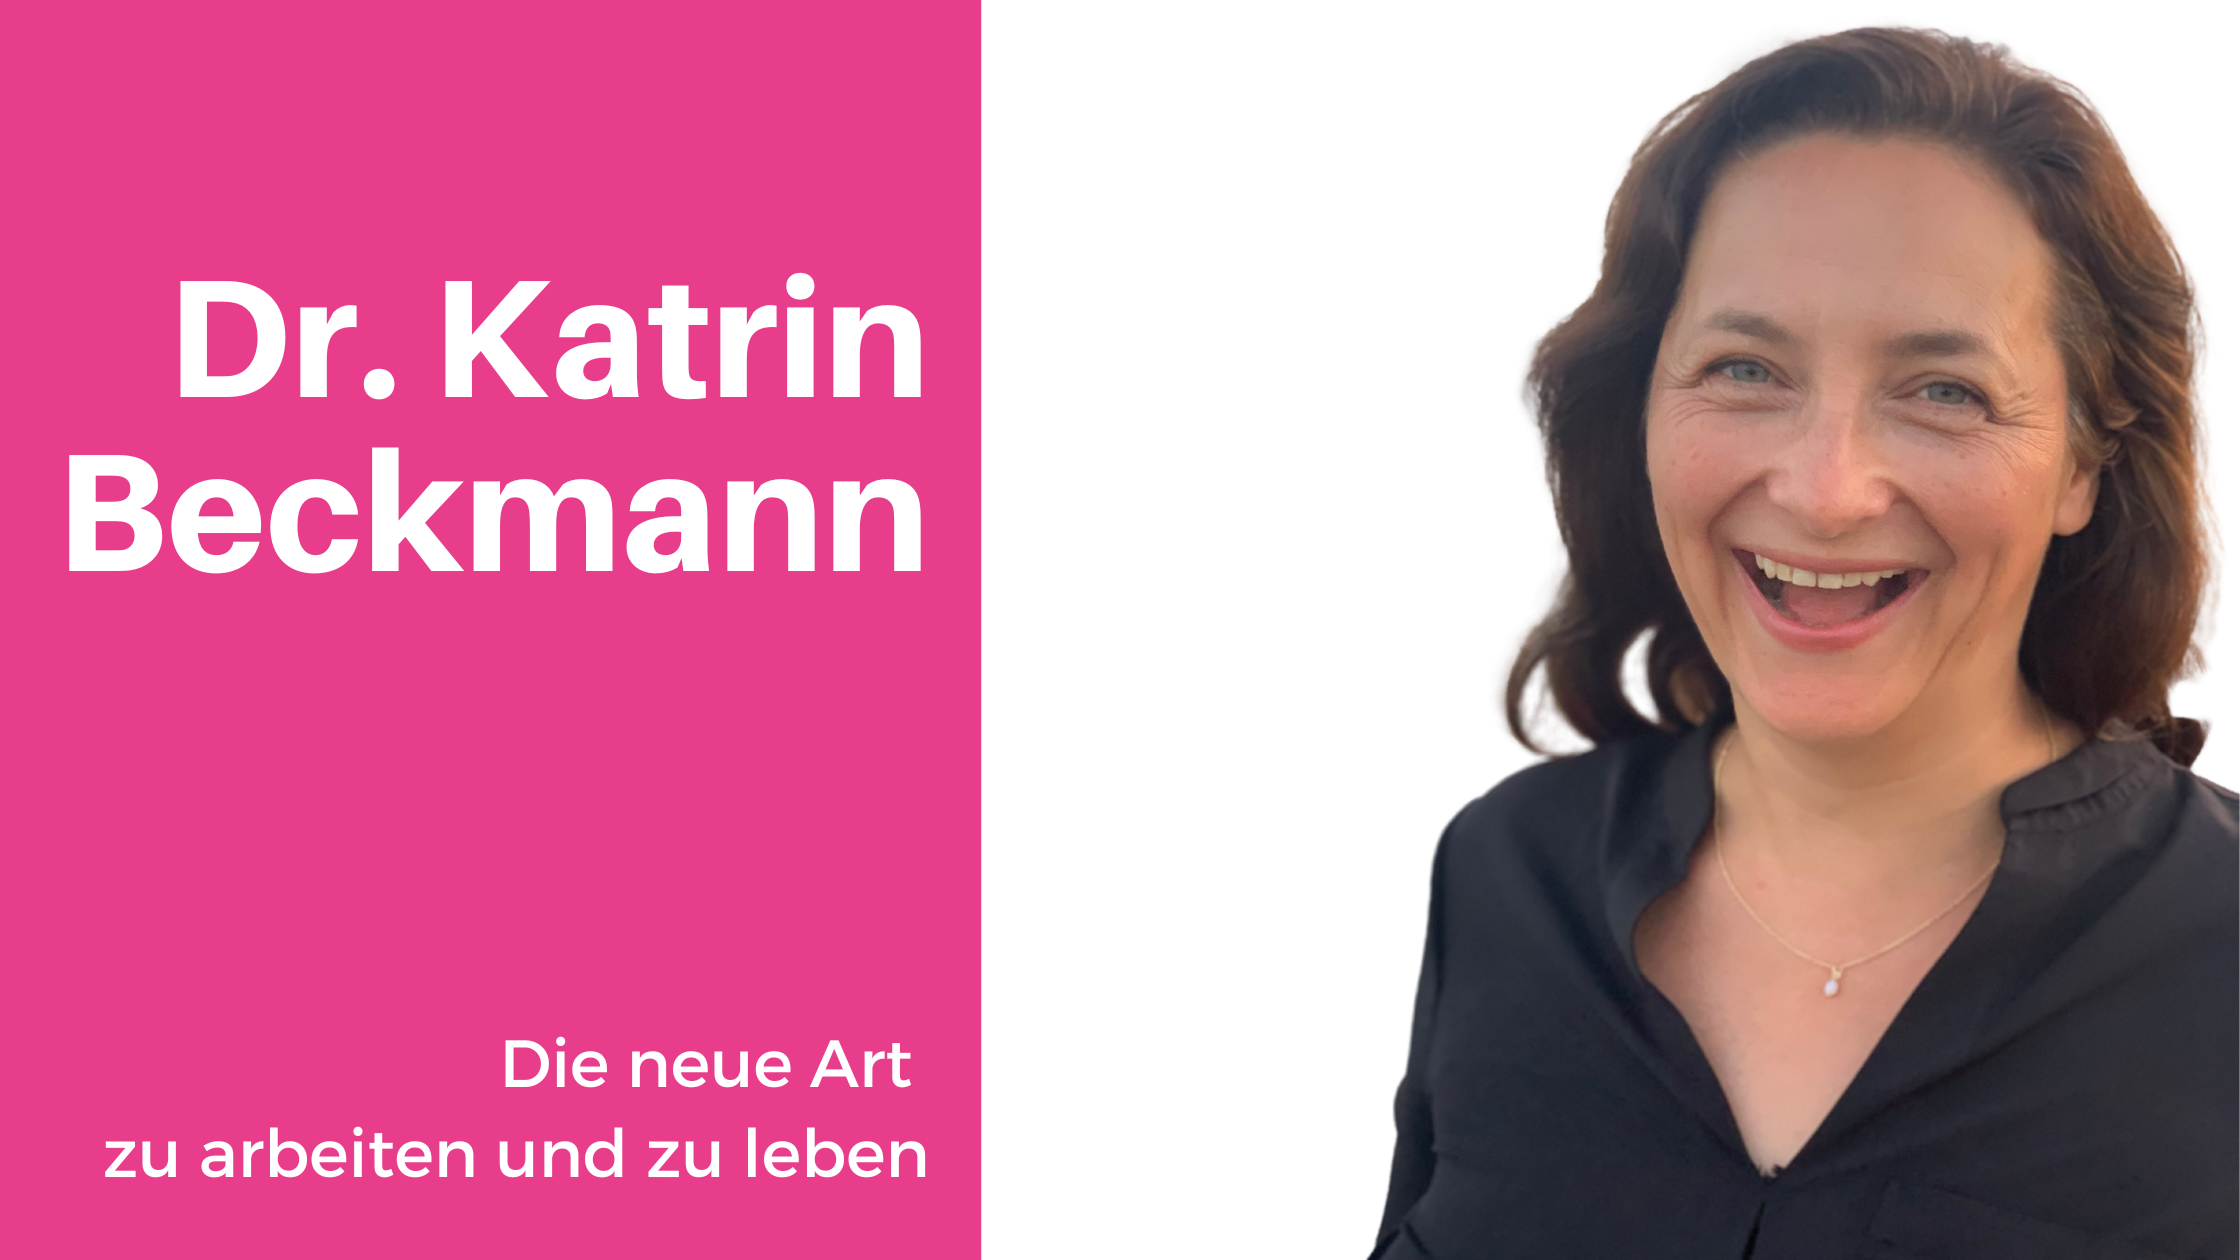 Dr. Katrin Beckmann - Die neue Art zu arbeiten und zu leben